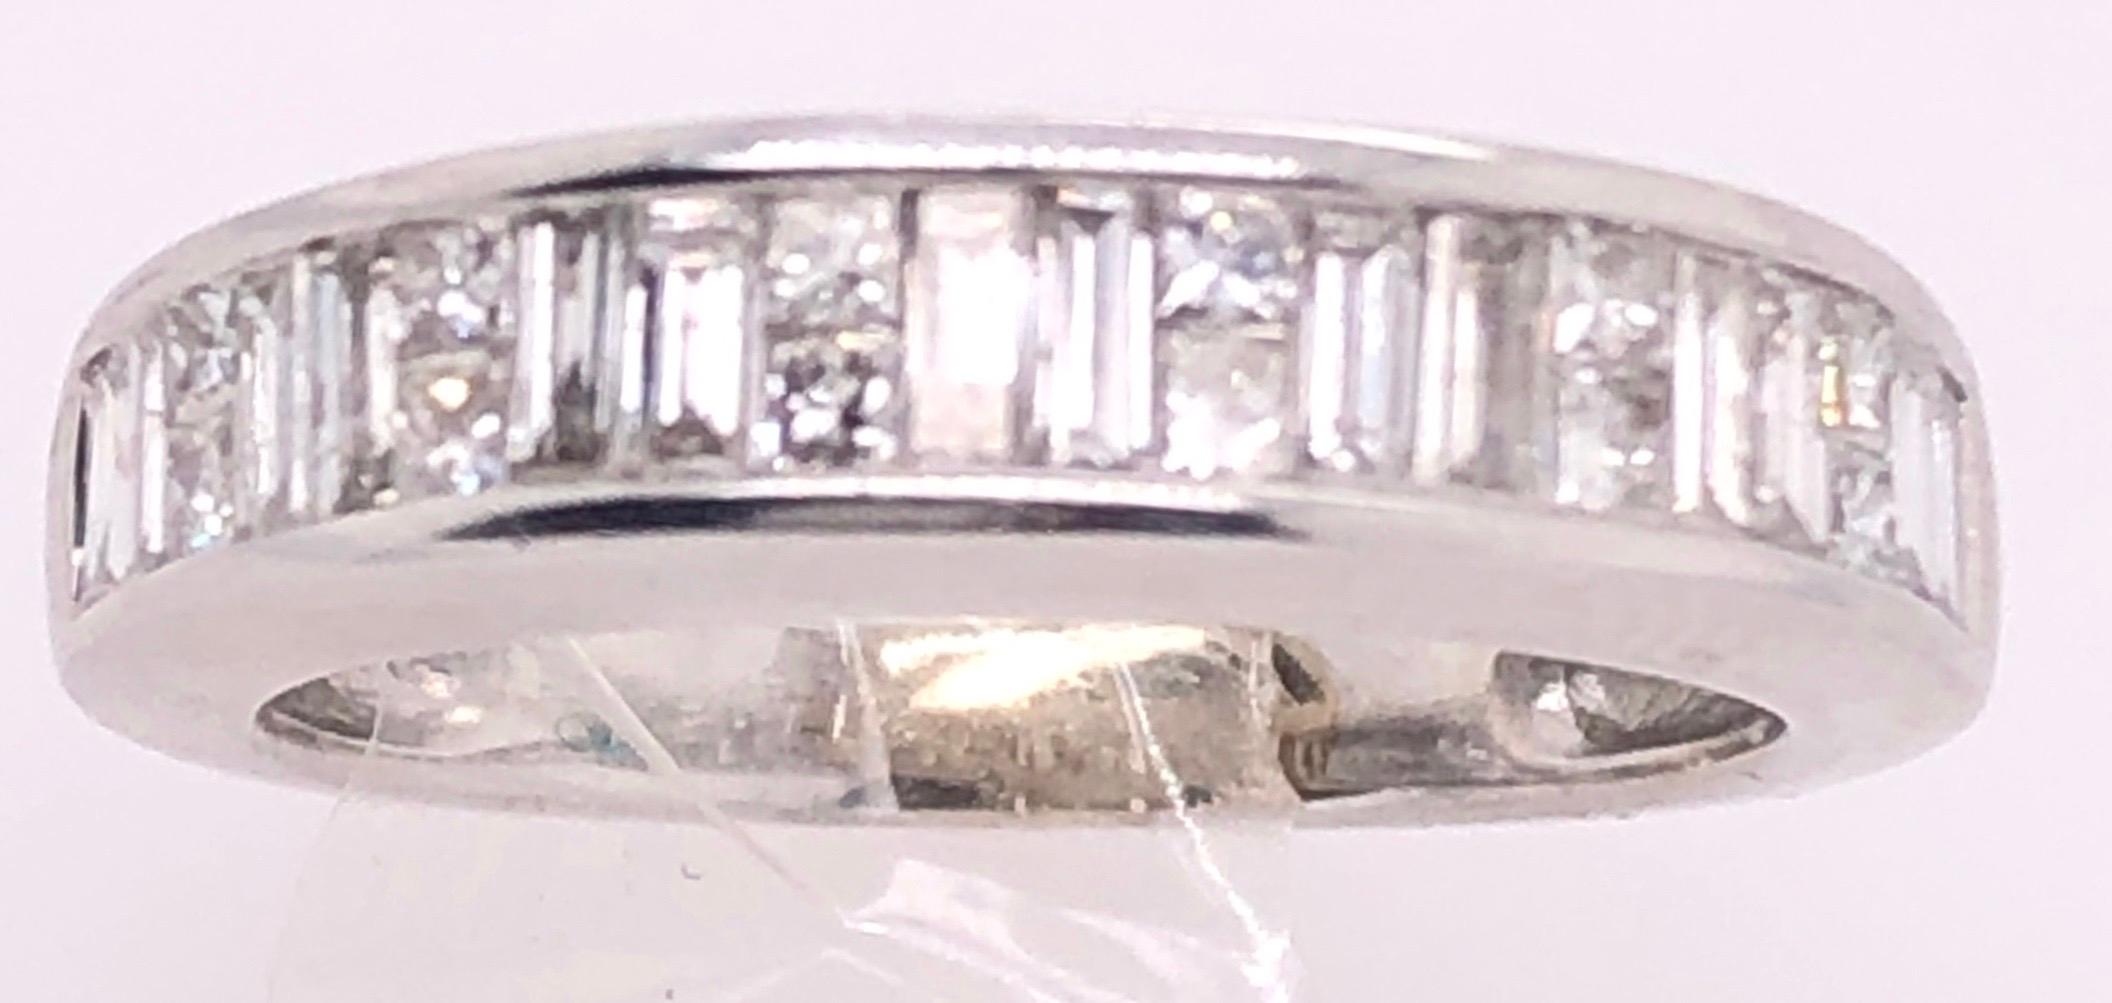 14 Karat White Gold Bridal Ring 1.25 Total Diamond Weight.
Size 5
3.81 grams total weight.